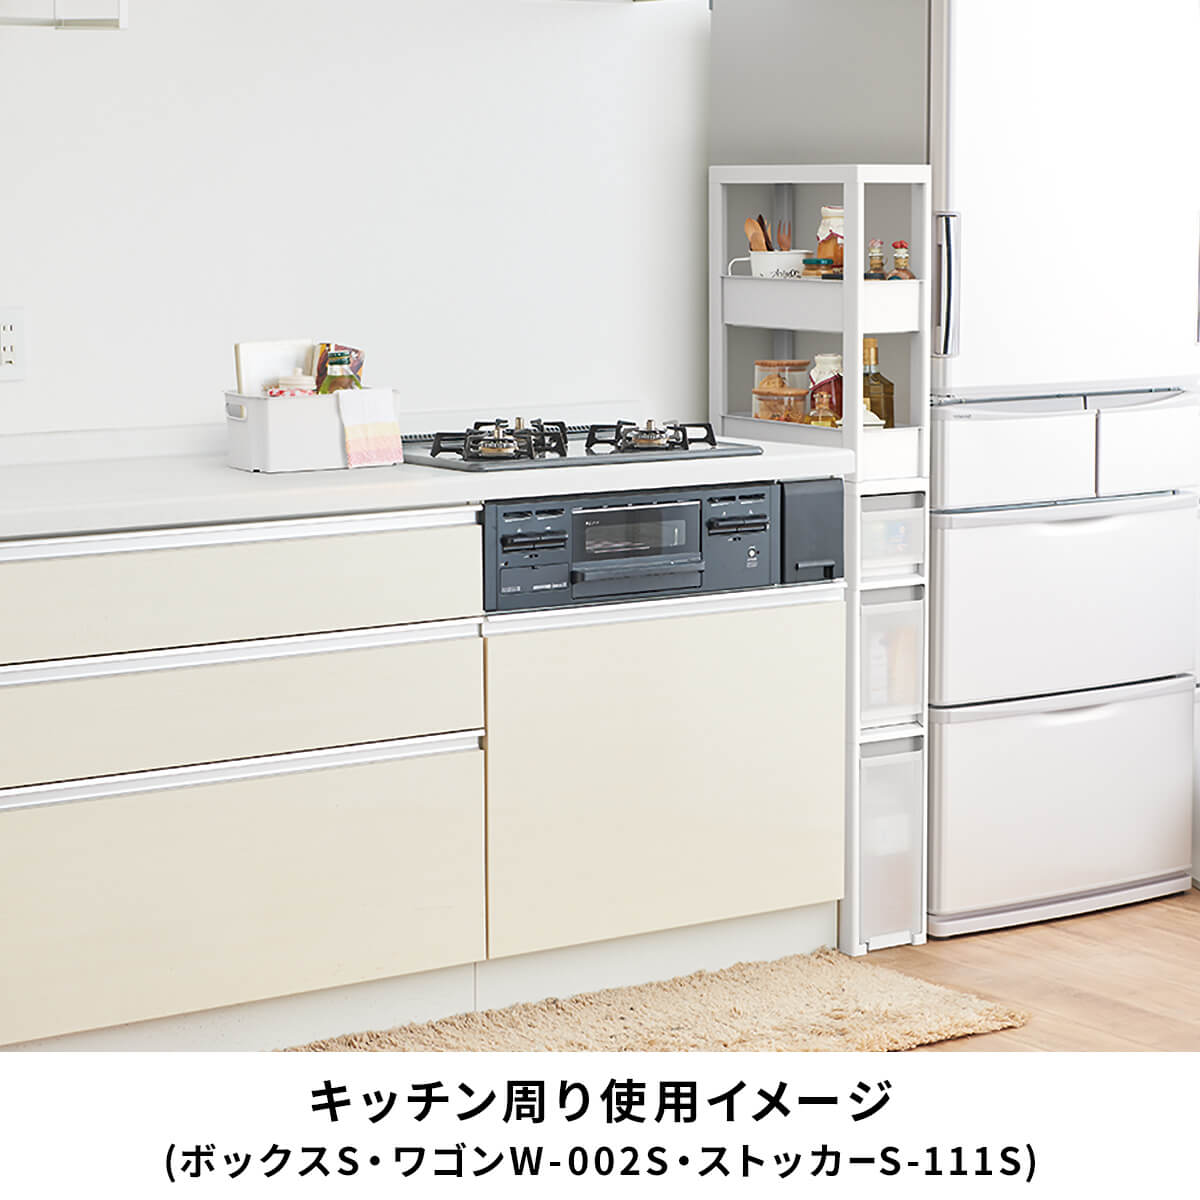 9815円 特価品コーナー☆ キッチン周りを整頓できる幅17cmの収納ストッカー